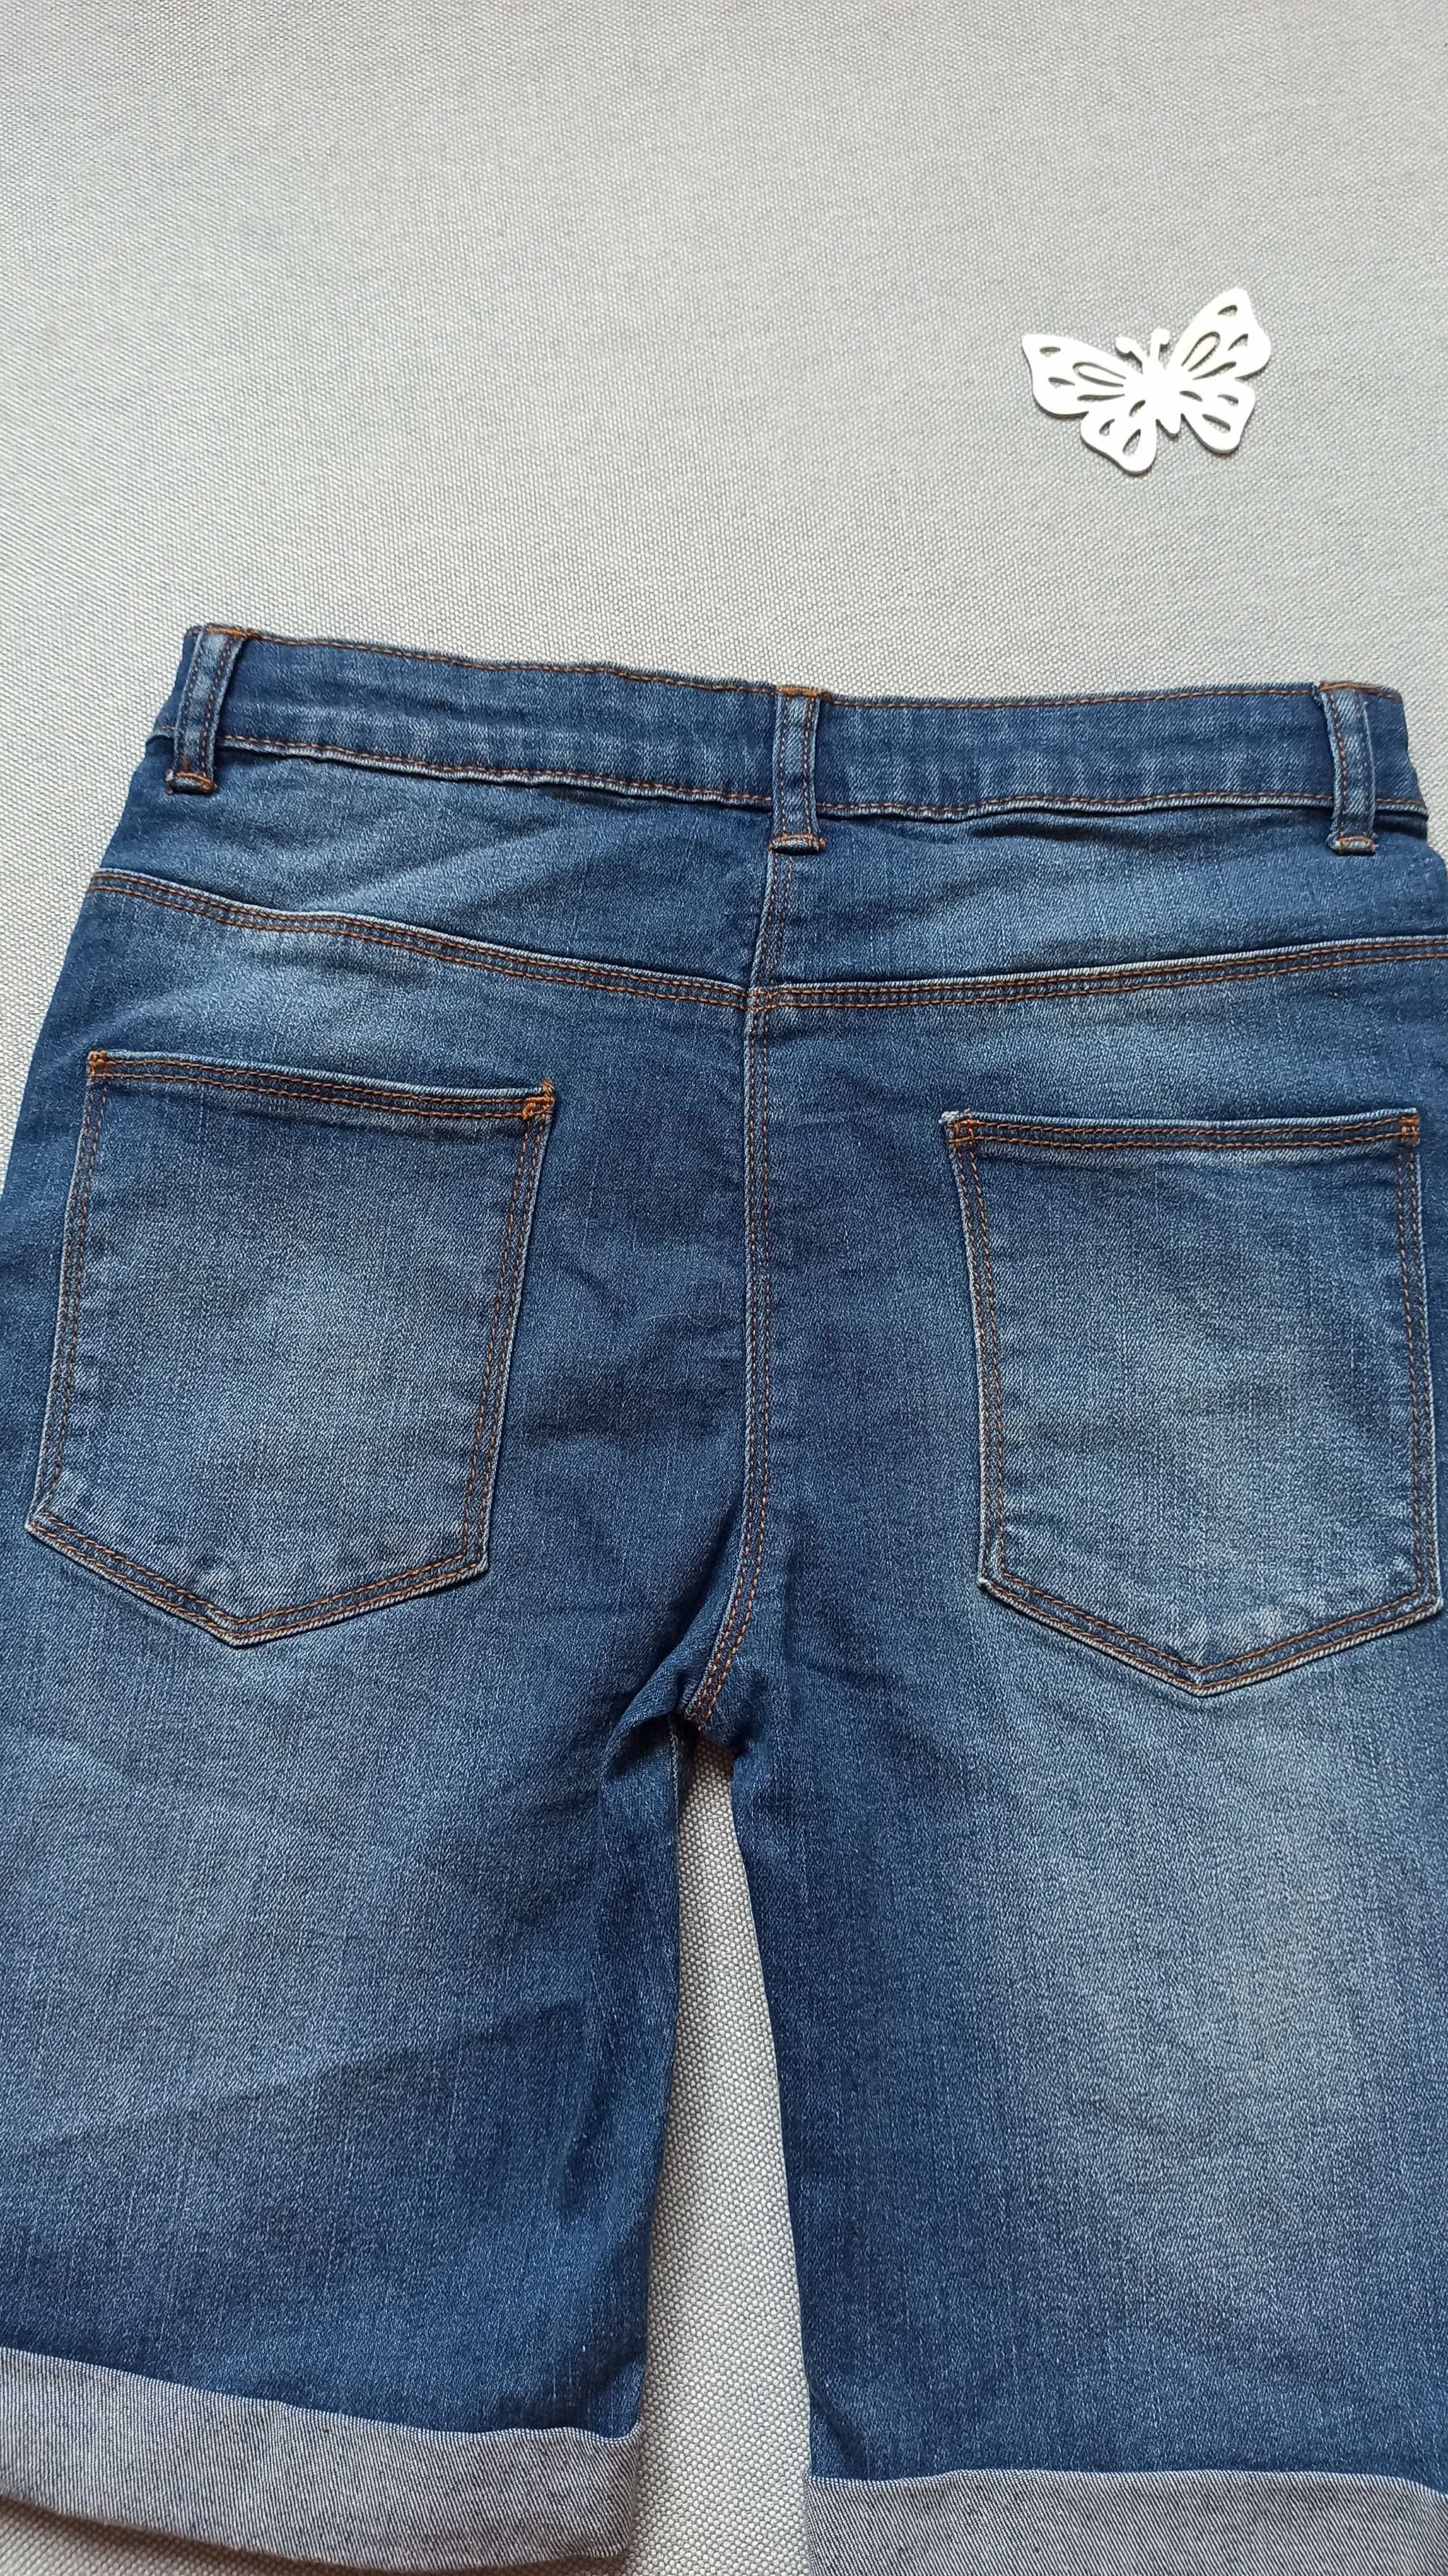 Дитячі джинсові шорти 10-11 років для дівчинки